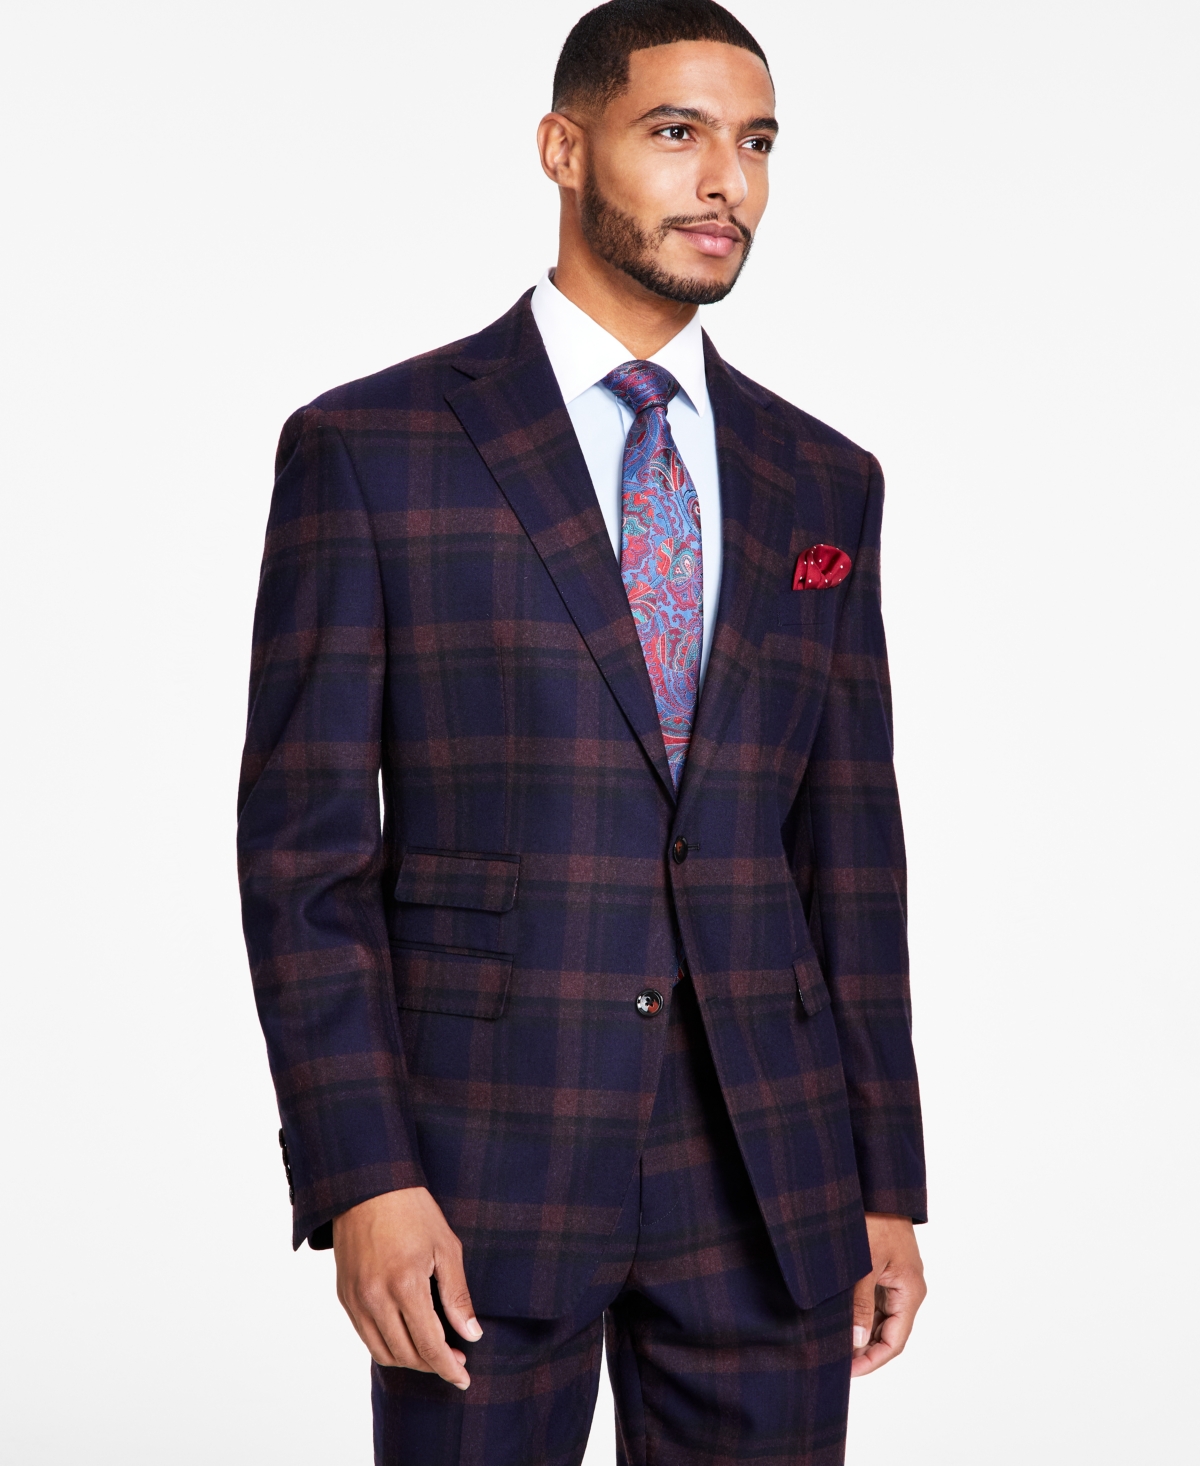 Men's Classic-Fit Navy & Burgundy Plaid Suit Separates Jacket - Navy/burgundy Plaid